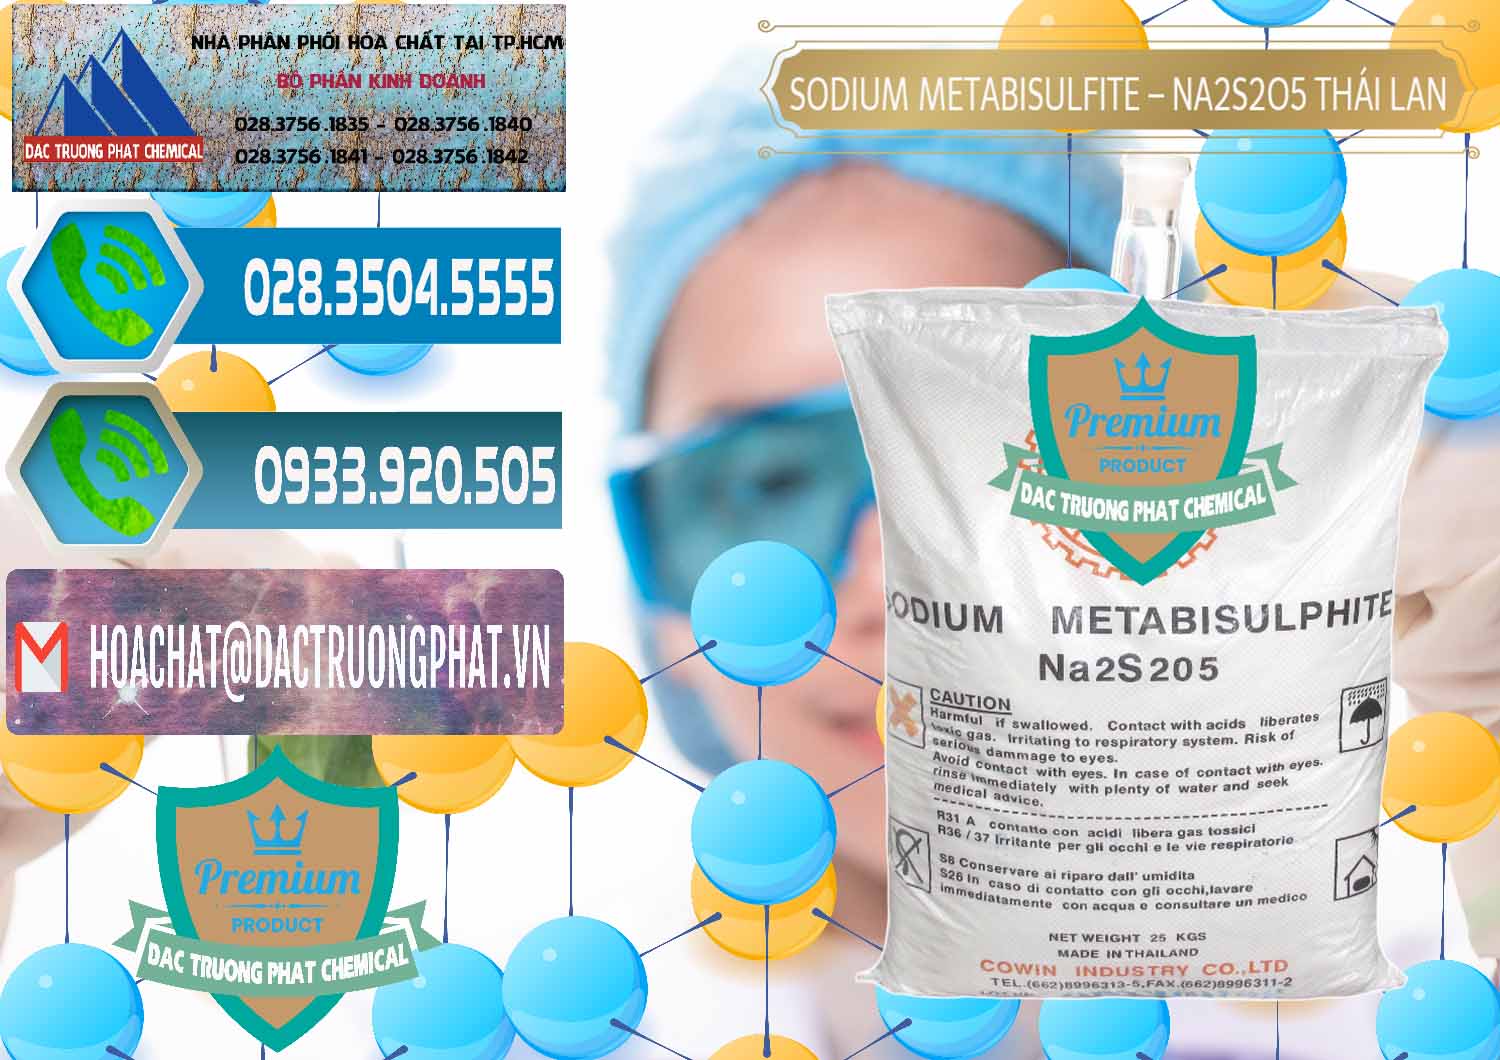 Cty chuyên bán - phân phối Sodium Metabisulfite - NA2S2O5 Thái Lan Cowin - 0145 - Nhà cung cấp _ nhập khẩu hóa chất tại TP.HCM - congtyhoachat.net